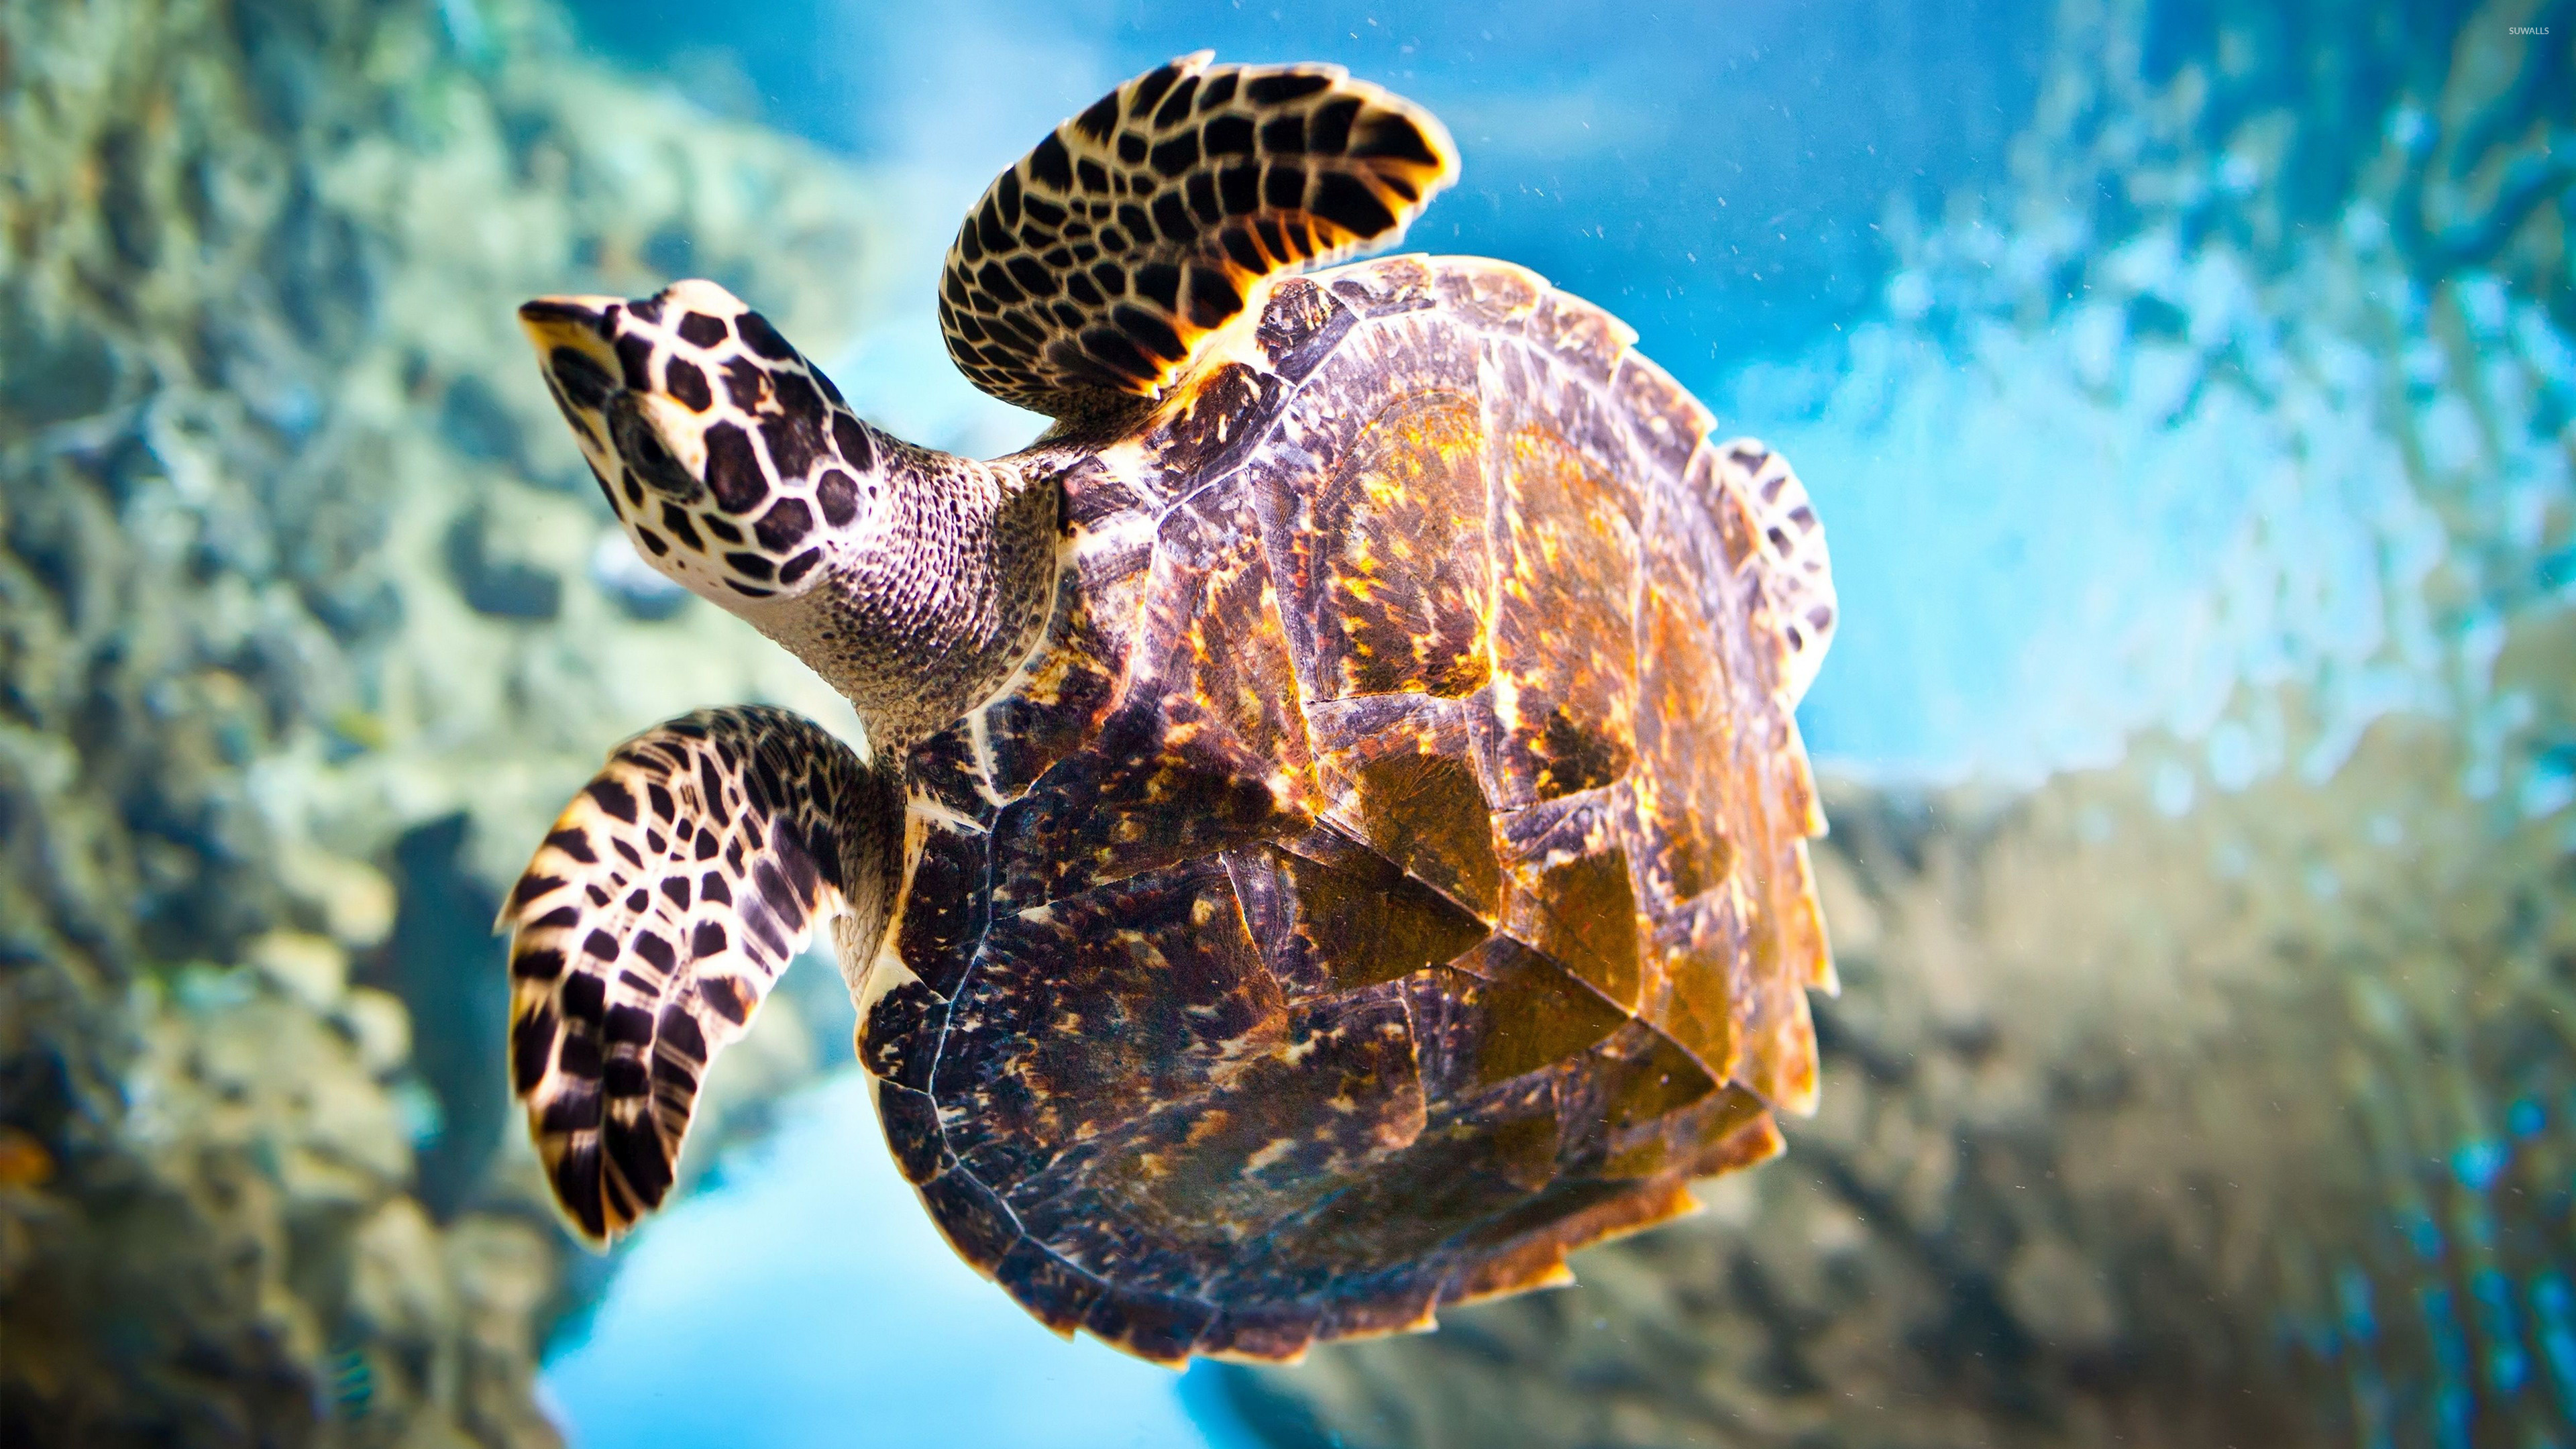 Sea turtle 2, Animal wallpapers, Oceanic beauty, Underwater creatures, 3840x2160 4K Desktop